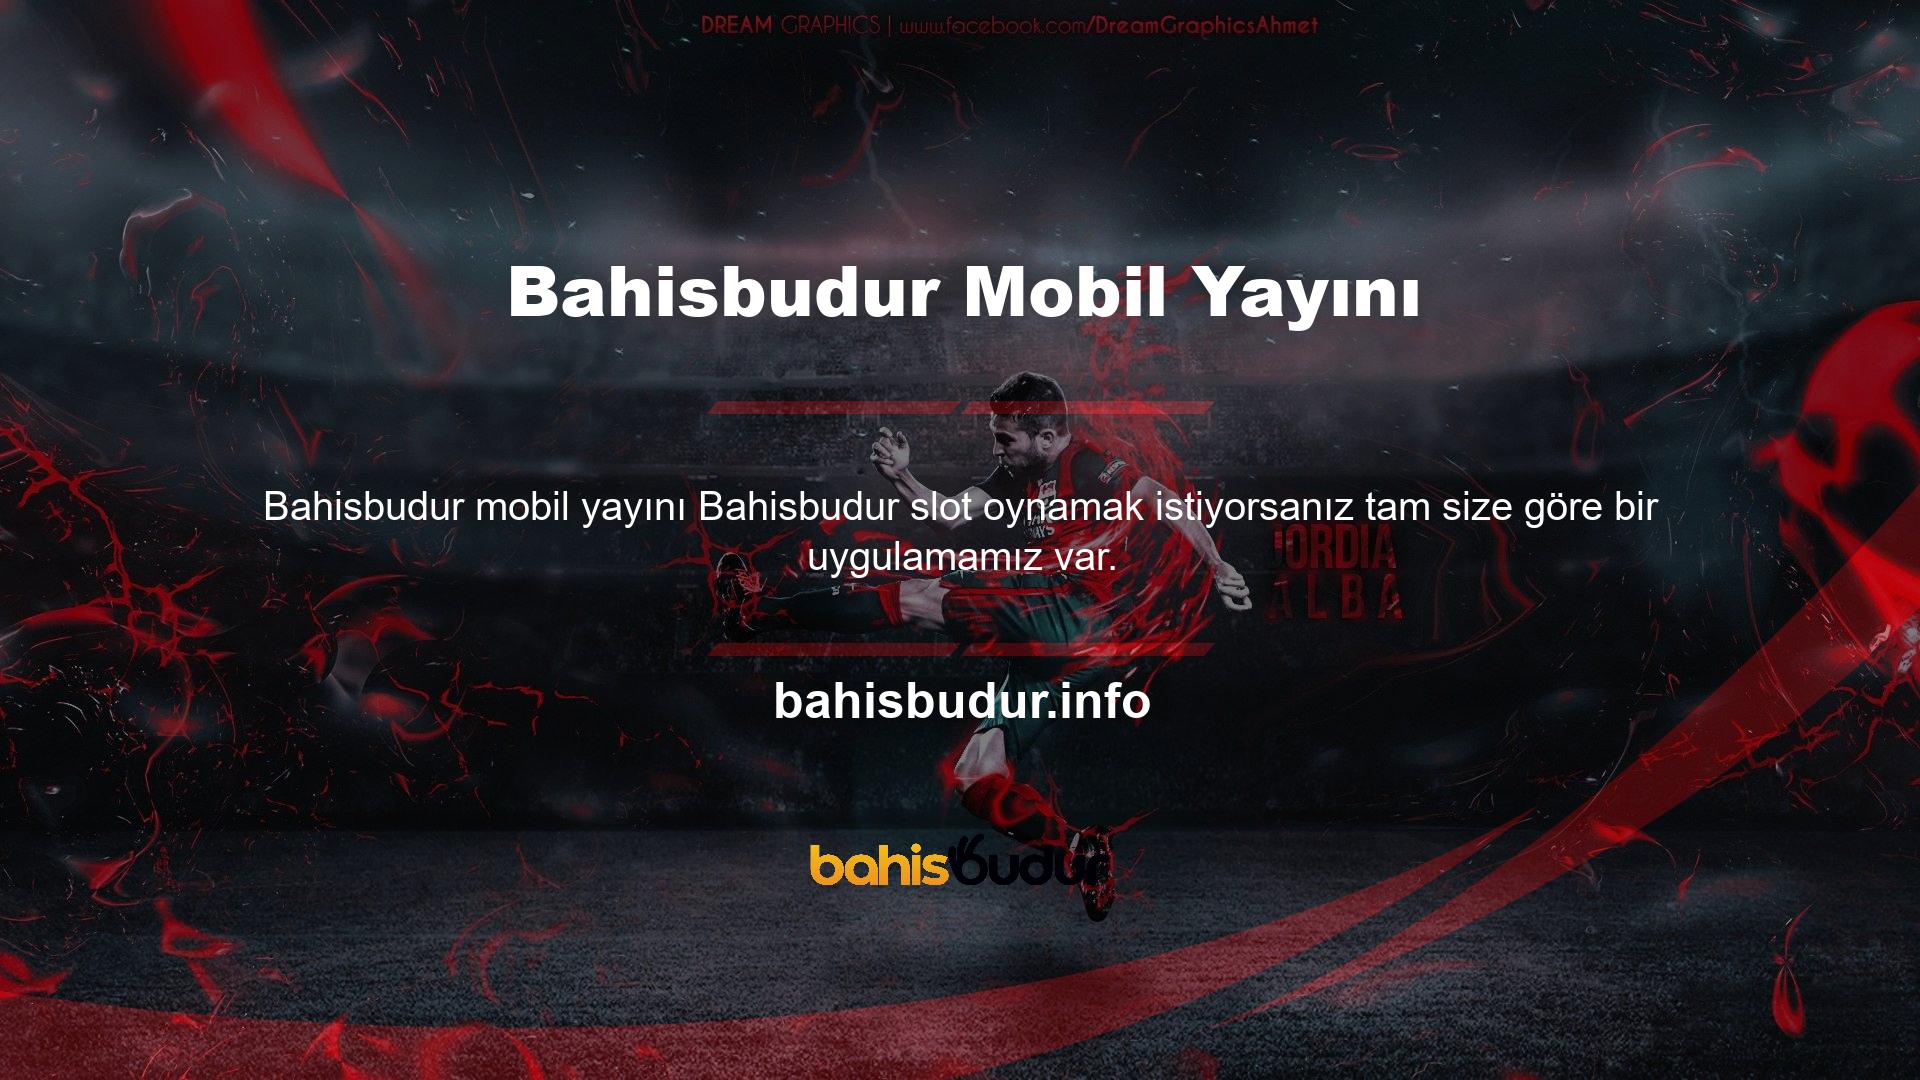 Bahisbudur Mobil Yayın iOS APK web sitesinden ücretsiz olarak indirilebilir